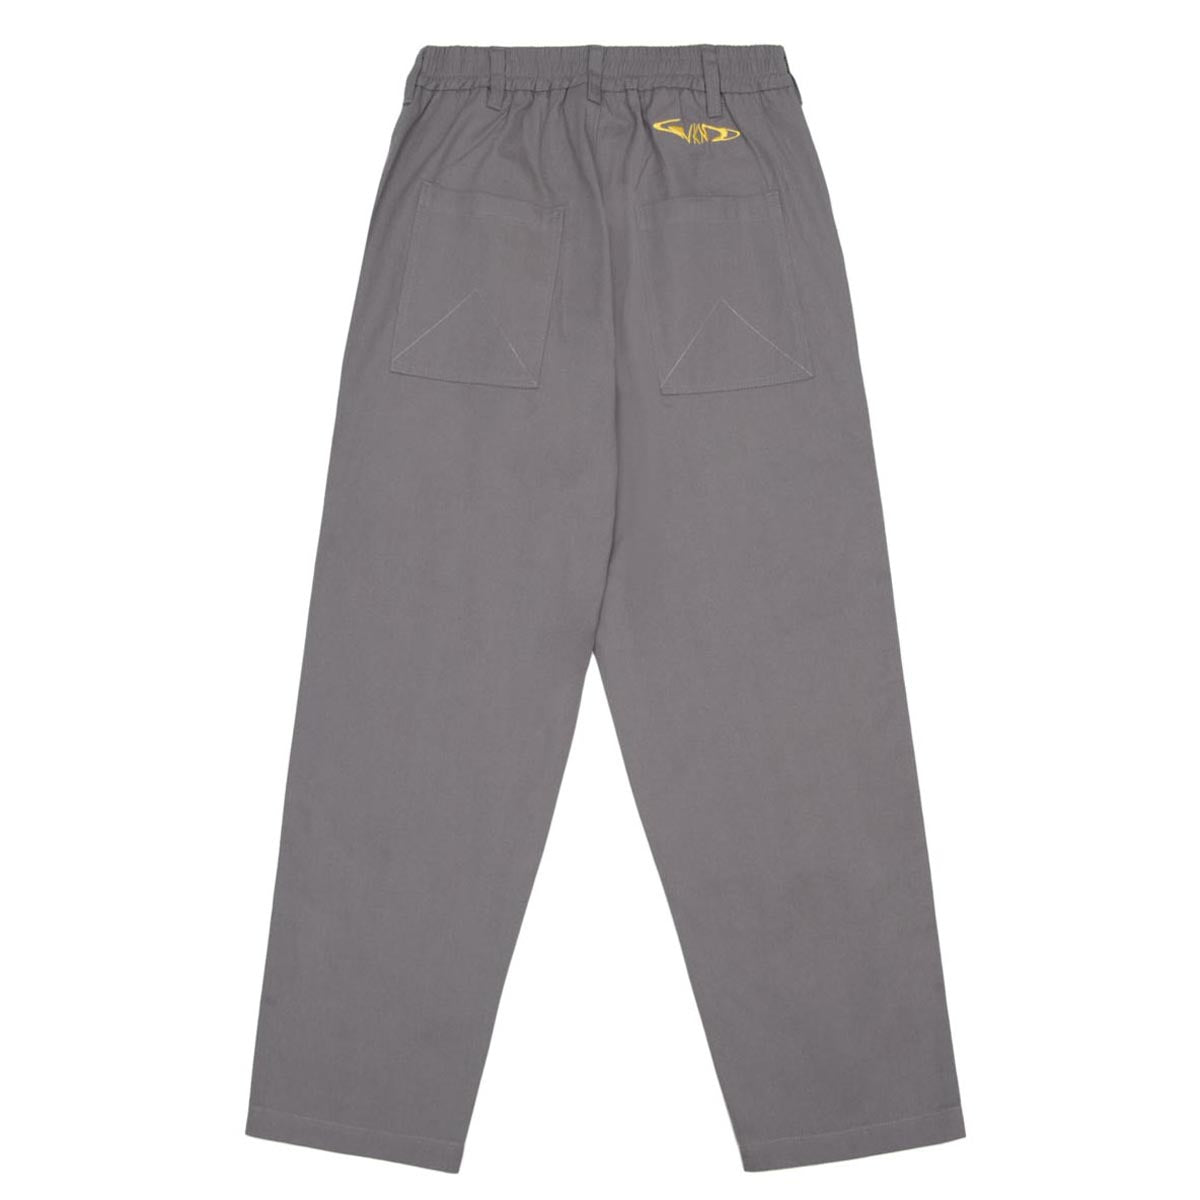 WKND Loosies Pants - Grey image 2